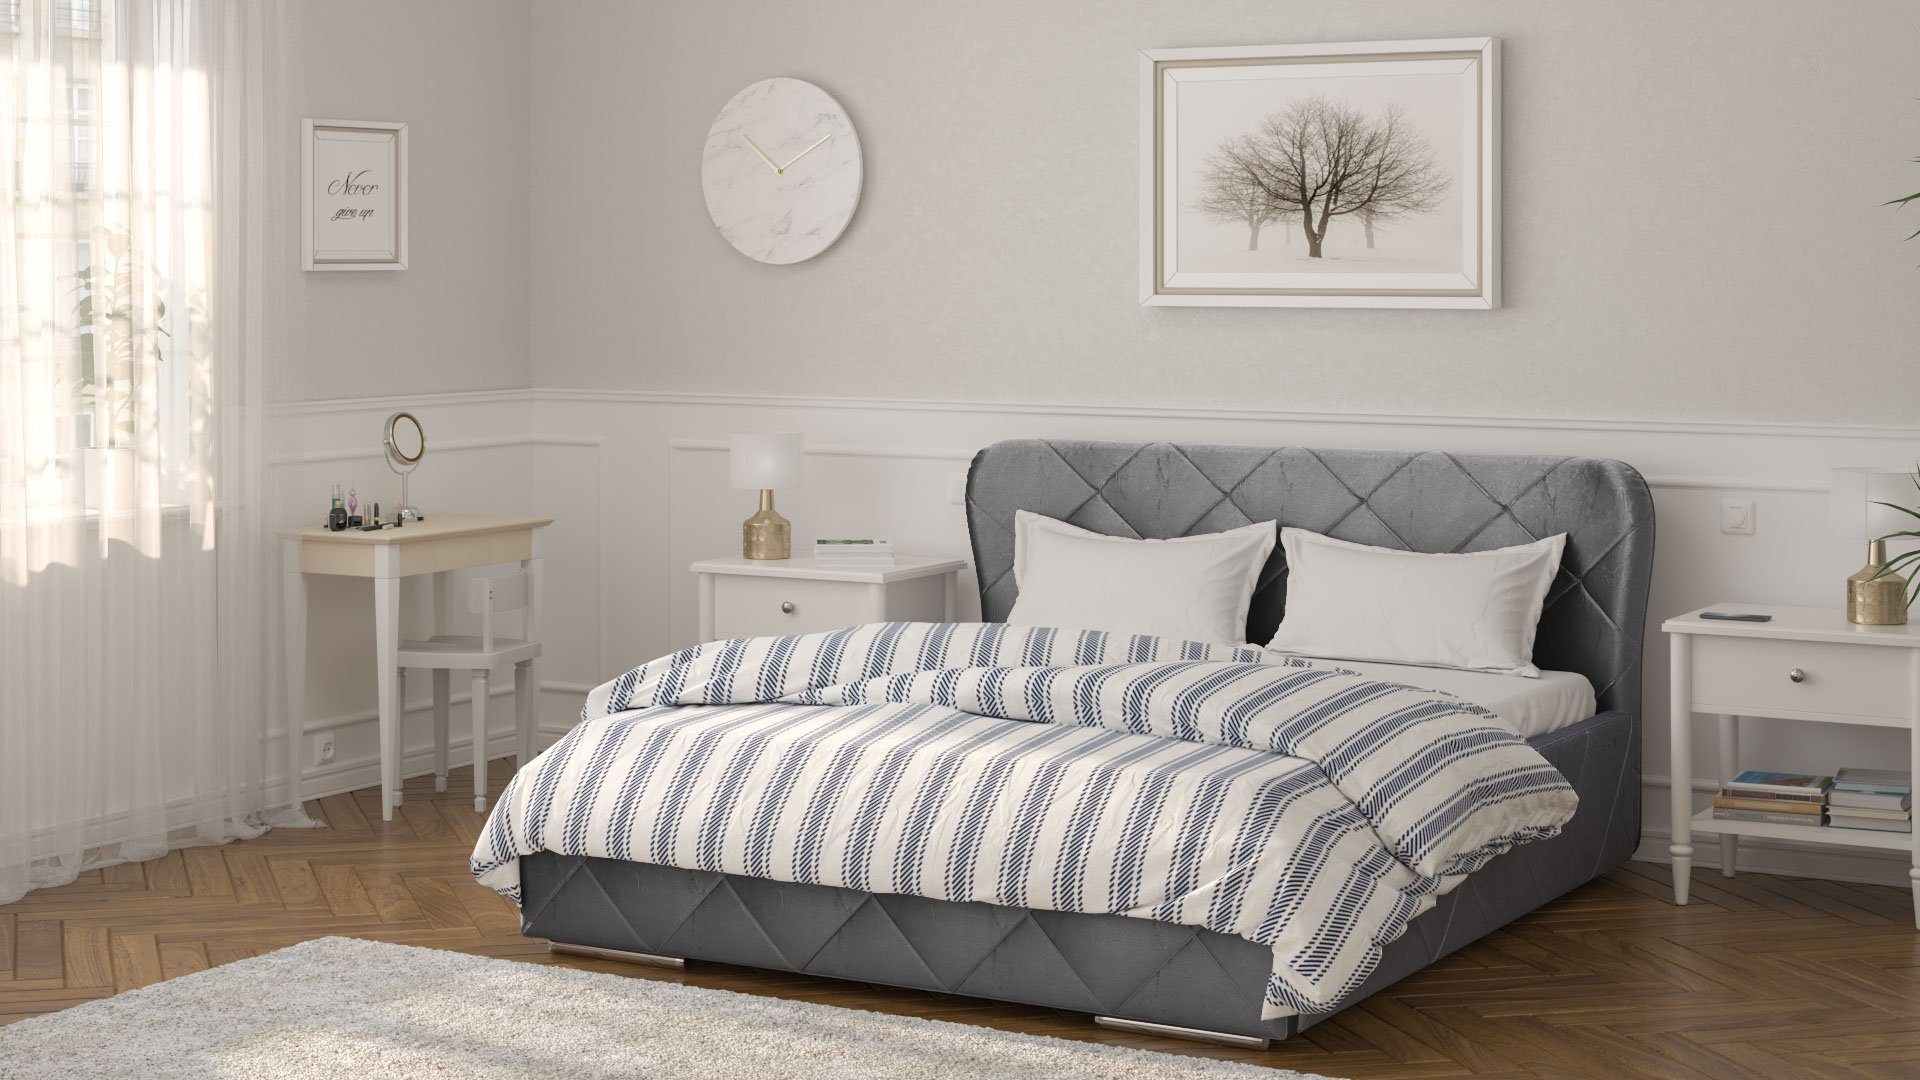 Polsterbett 200x160 Doppelbetten Monako Bettzeugbehälter cm Grau Siblo - mit Bett hoher - Holzrahmen Schlafkomfort - - Doppelbett